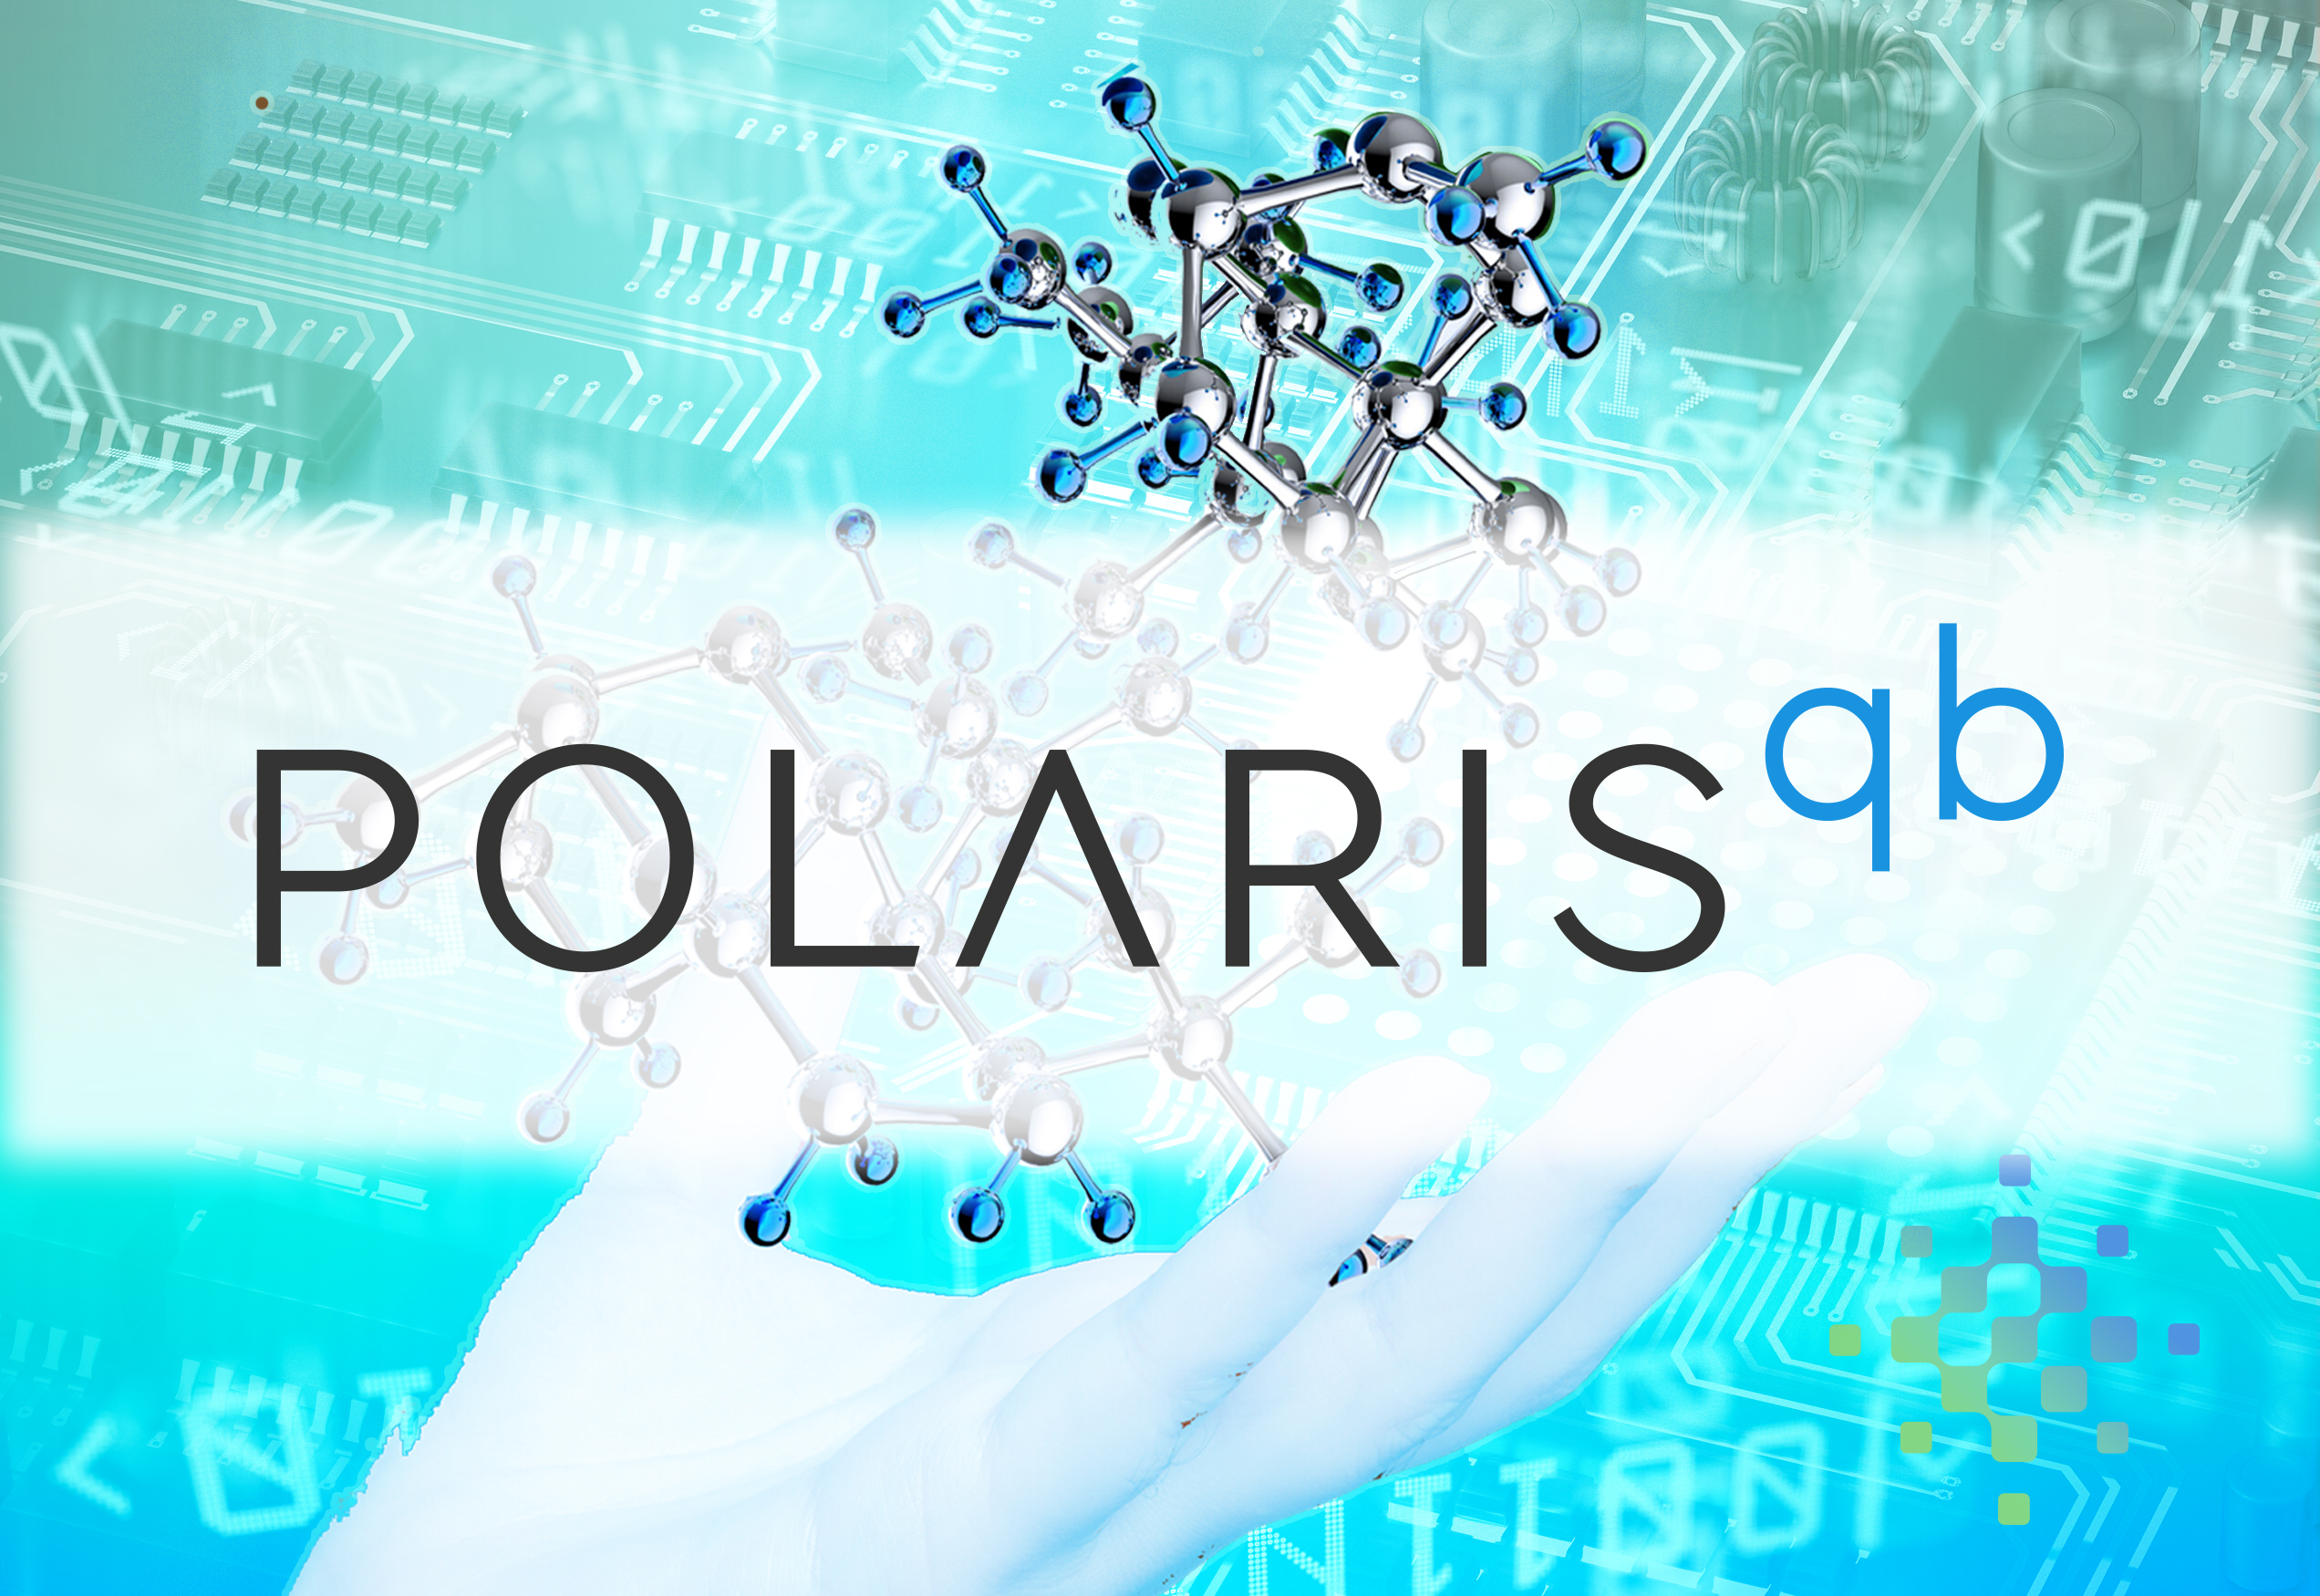 The PolarisQB logo over an image of a hand holding a molecule.